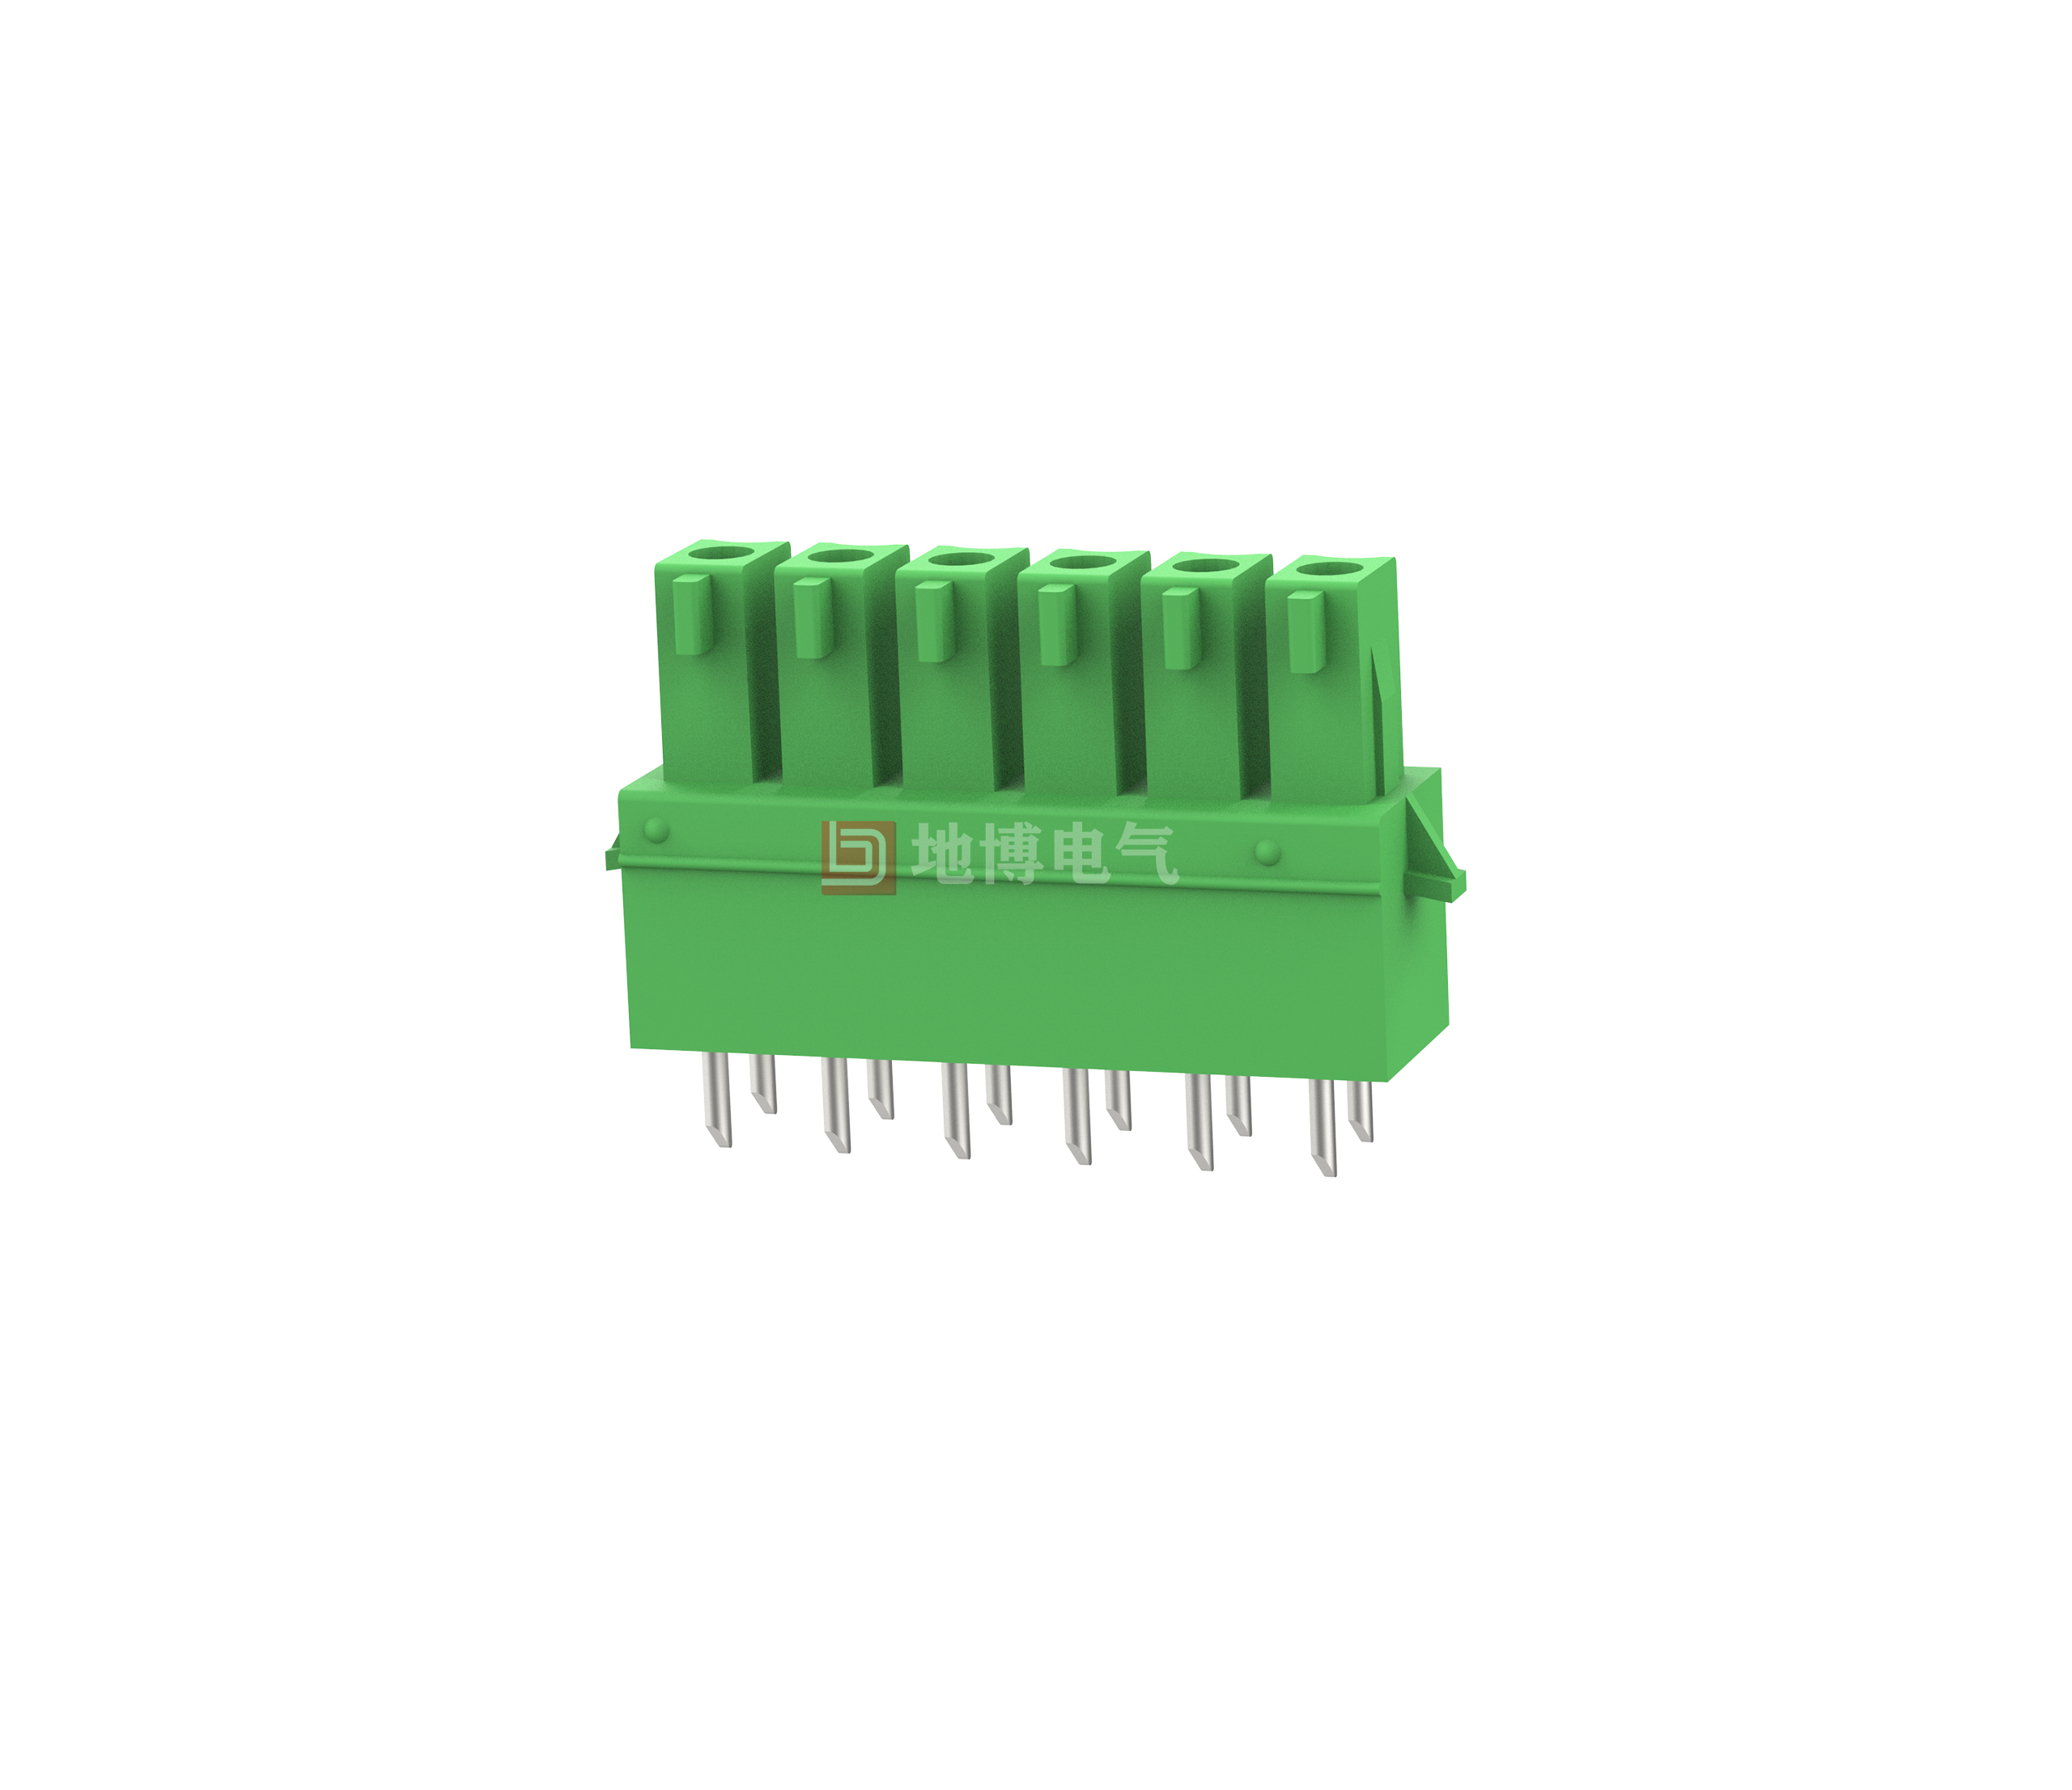 PCB socket DB2EBG-3.5